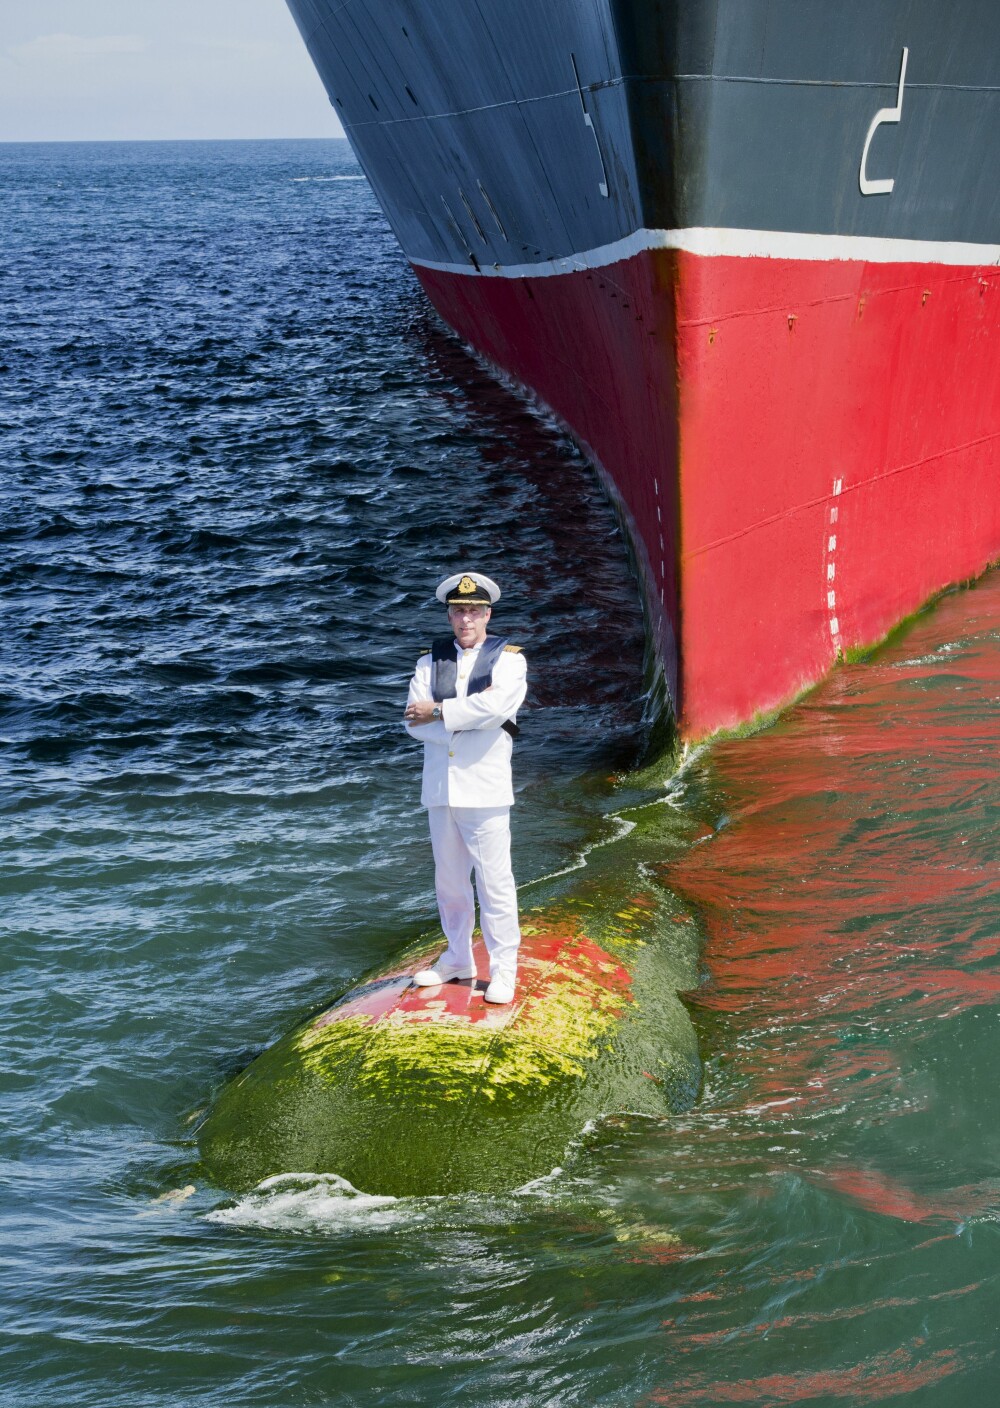 Imagini inedite cu comandantul celui mai mare vas de croaziera din lume. Unde s-a fotografiat capitanul vasului Queen Mary 2 - Imaginea 1